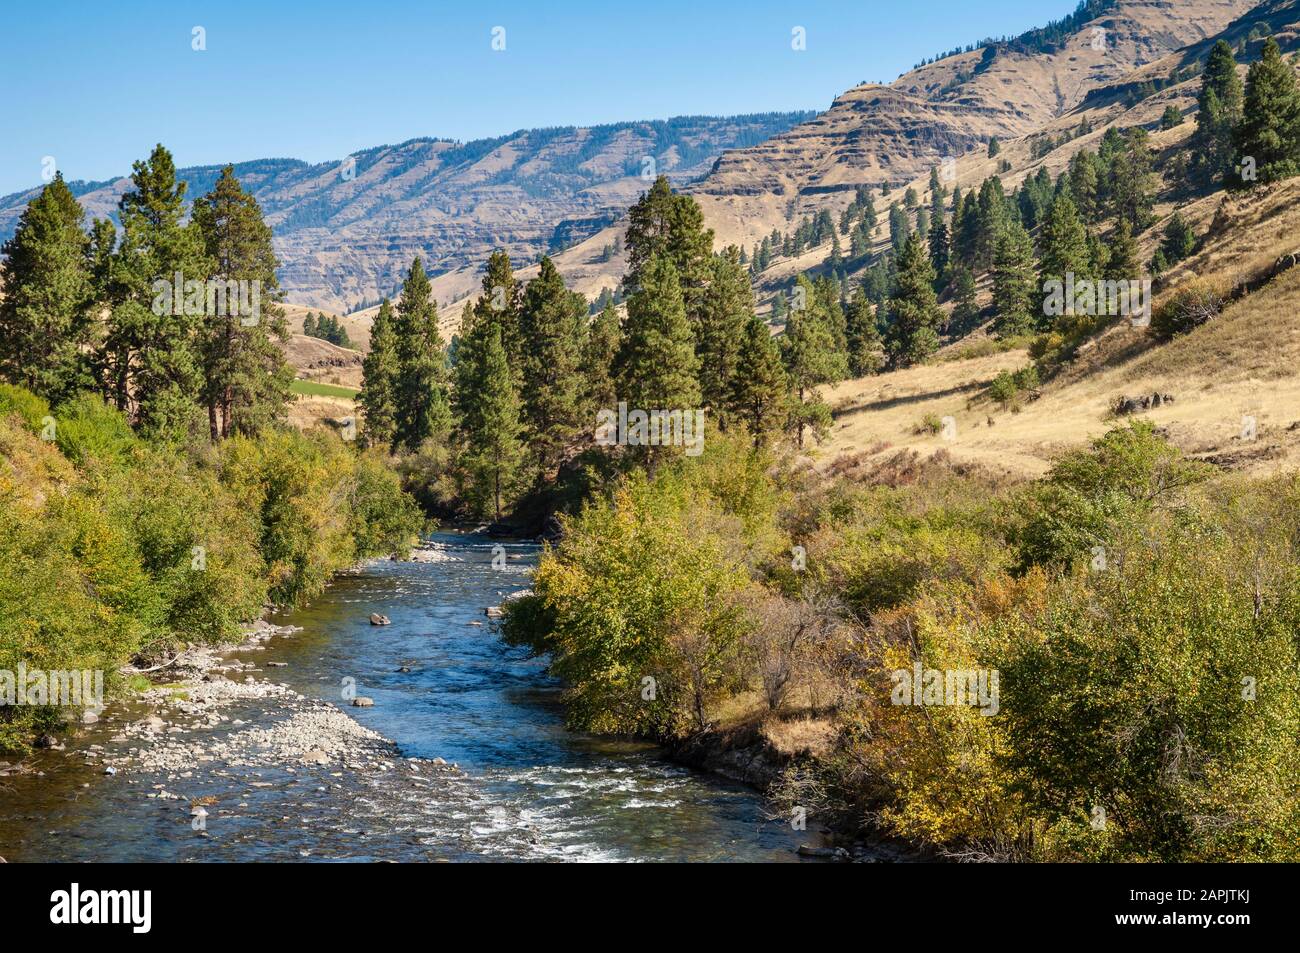 Il fiume Wild e Scenic Imnaha, un affluente del fiume Snake, nell'Oregon nordorientale. Foto Stock